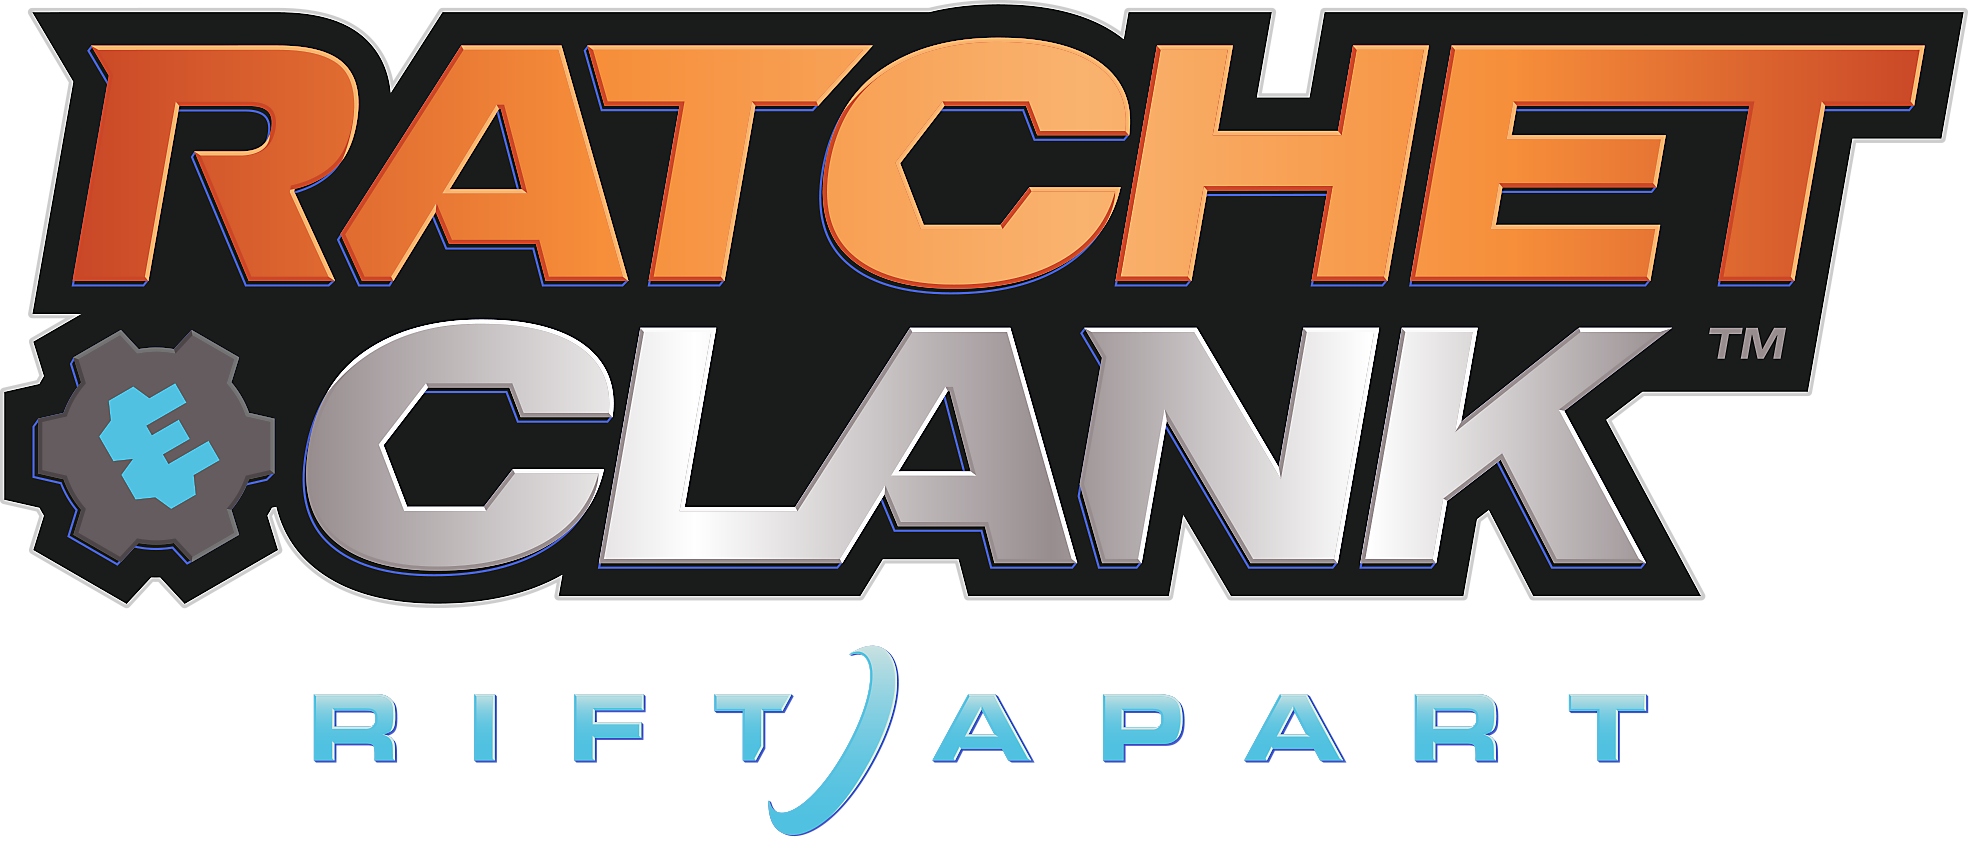 Logotipo de Ratchet & Clank Una dimensión aparte